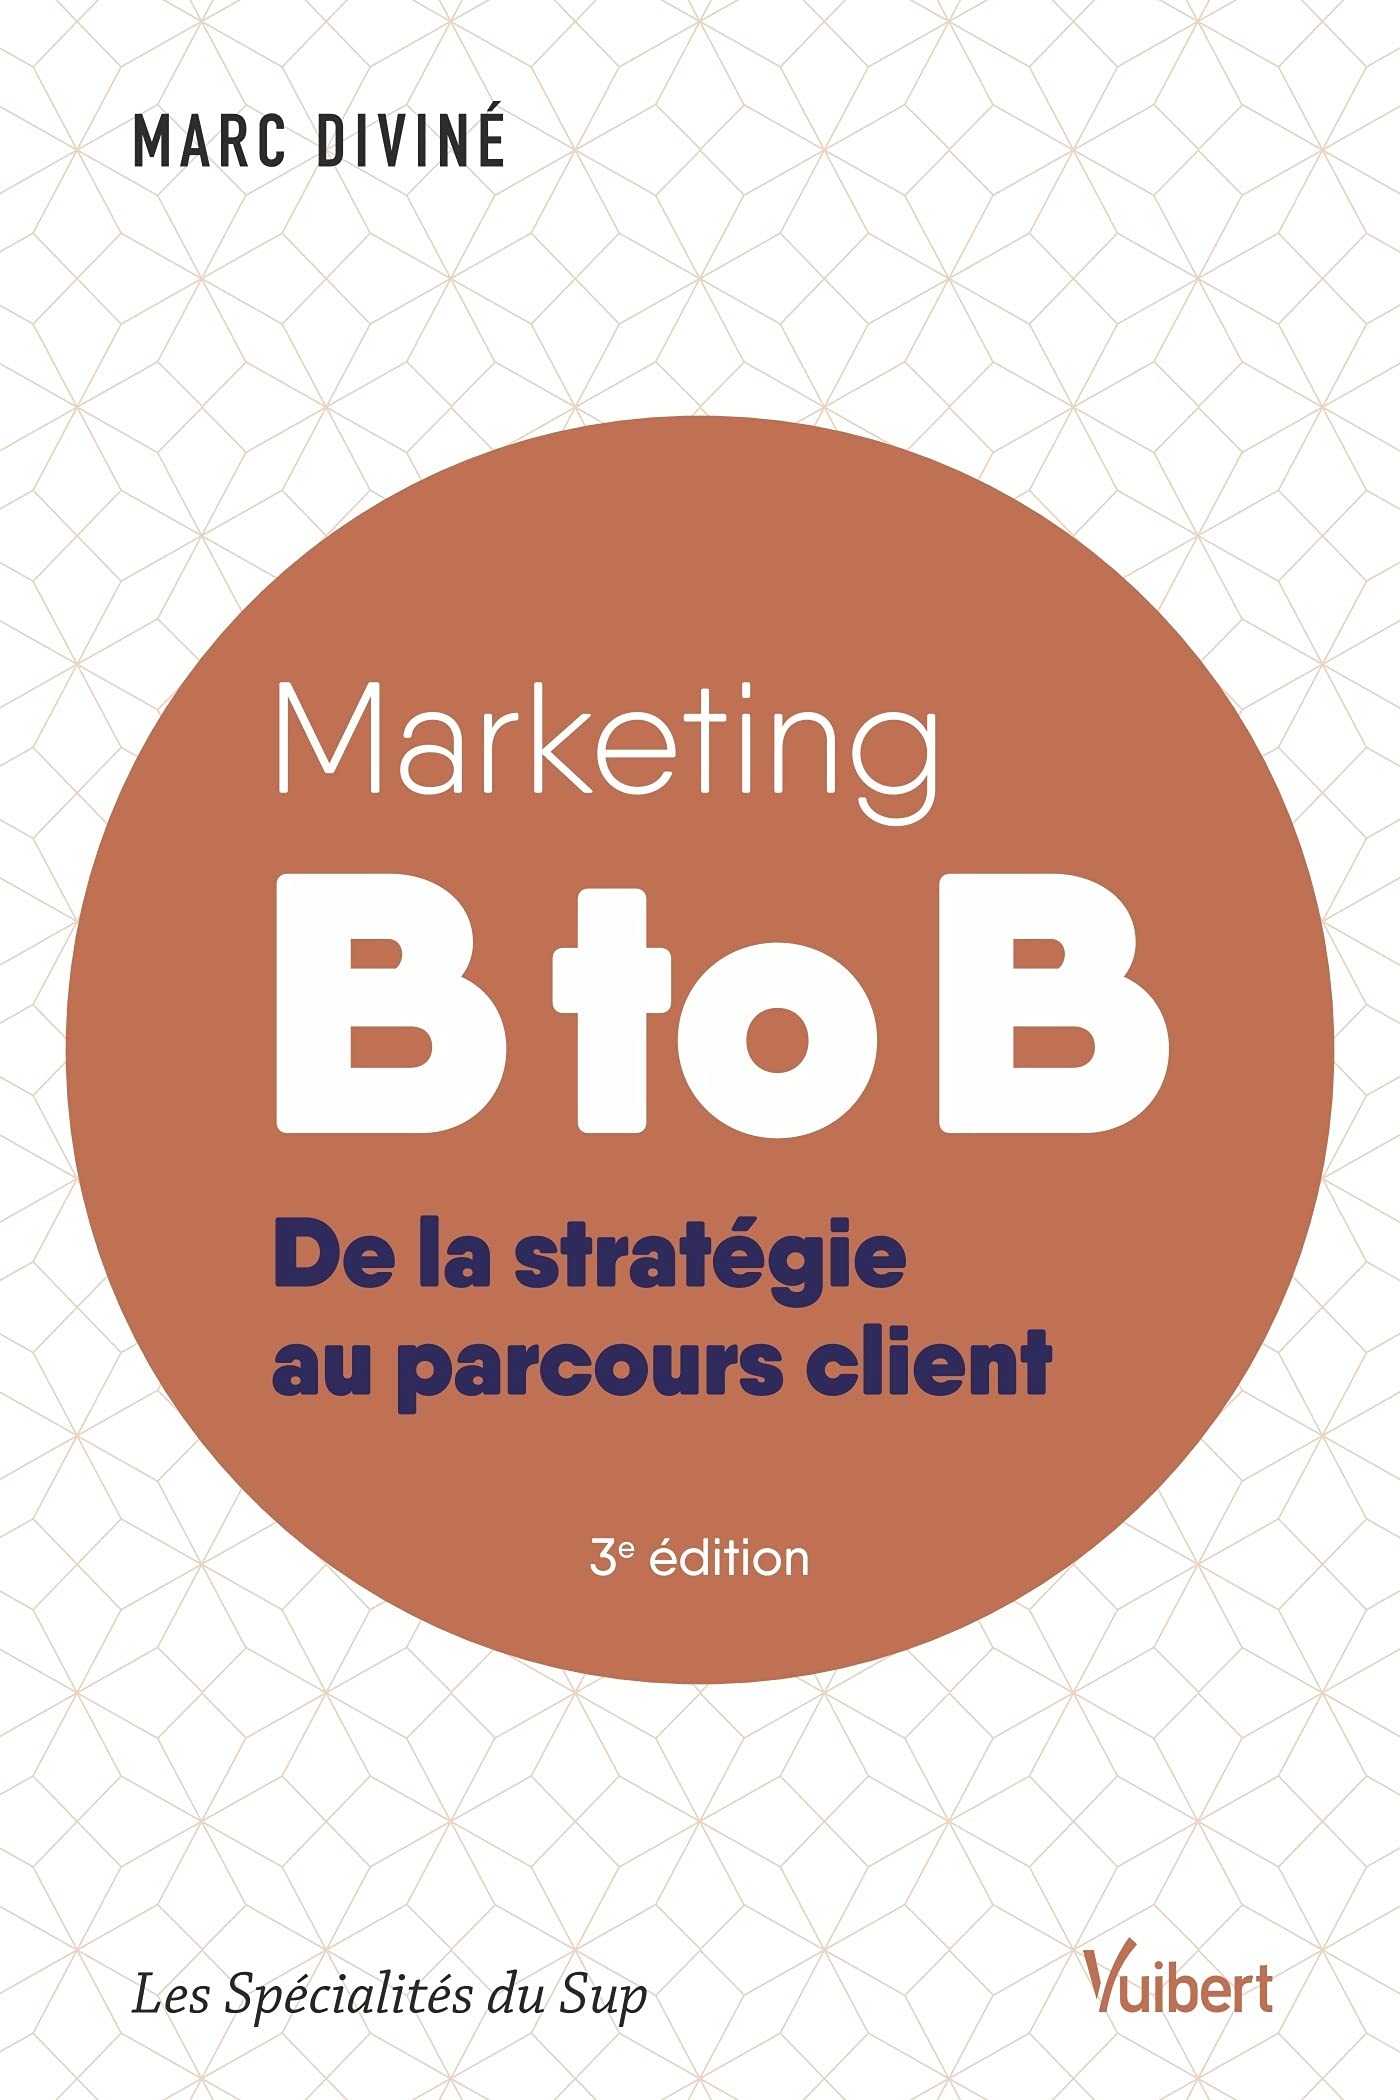 Marketing B to B: De la stratégie au parcours client (2020)